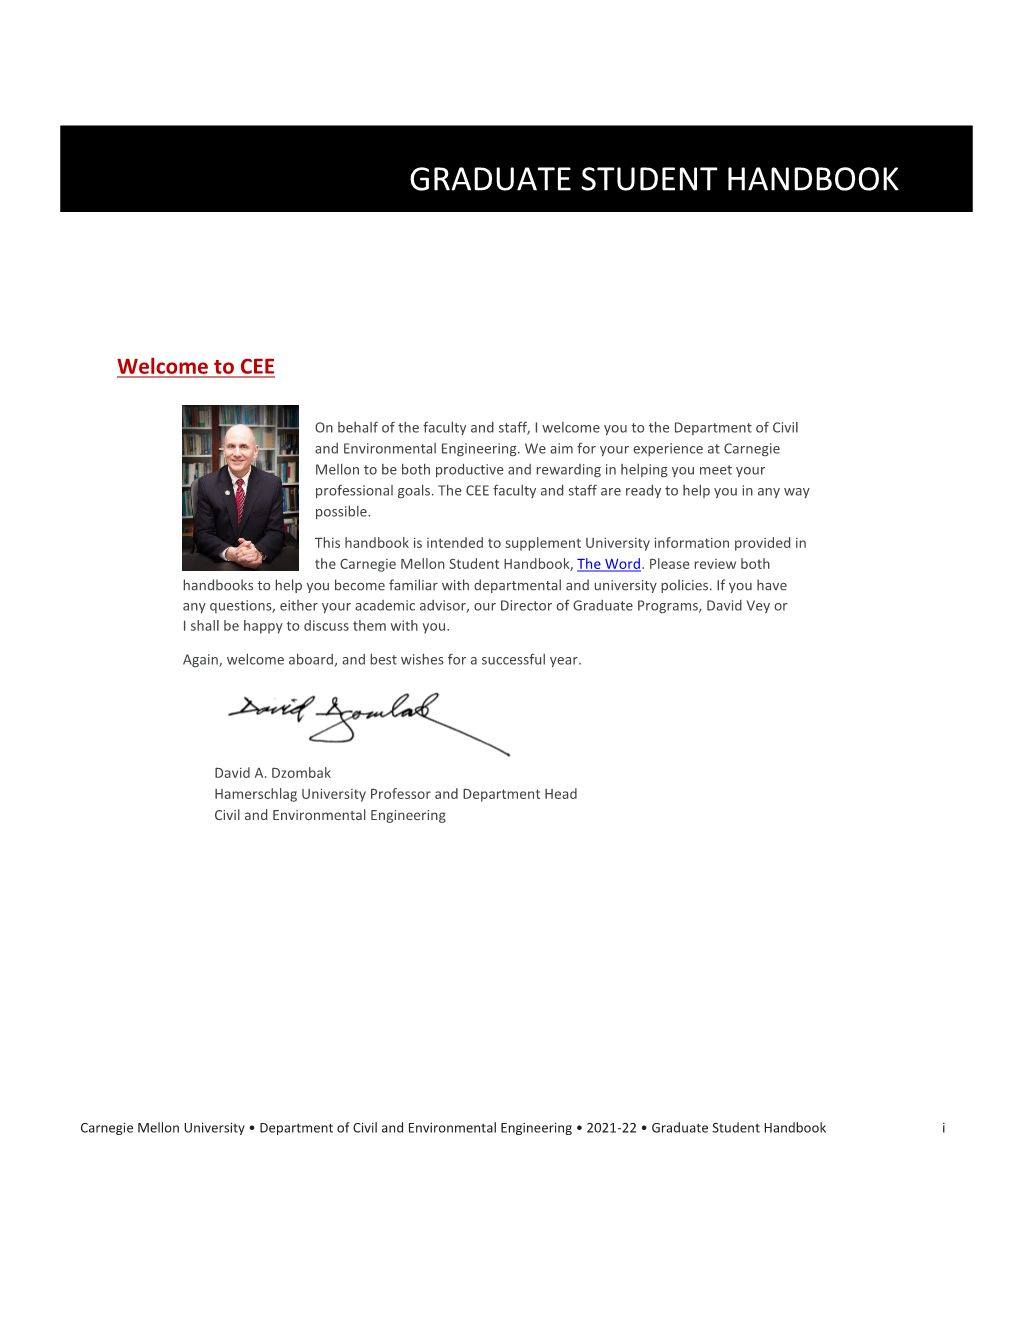 CEE Graduate Student Handbook